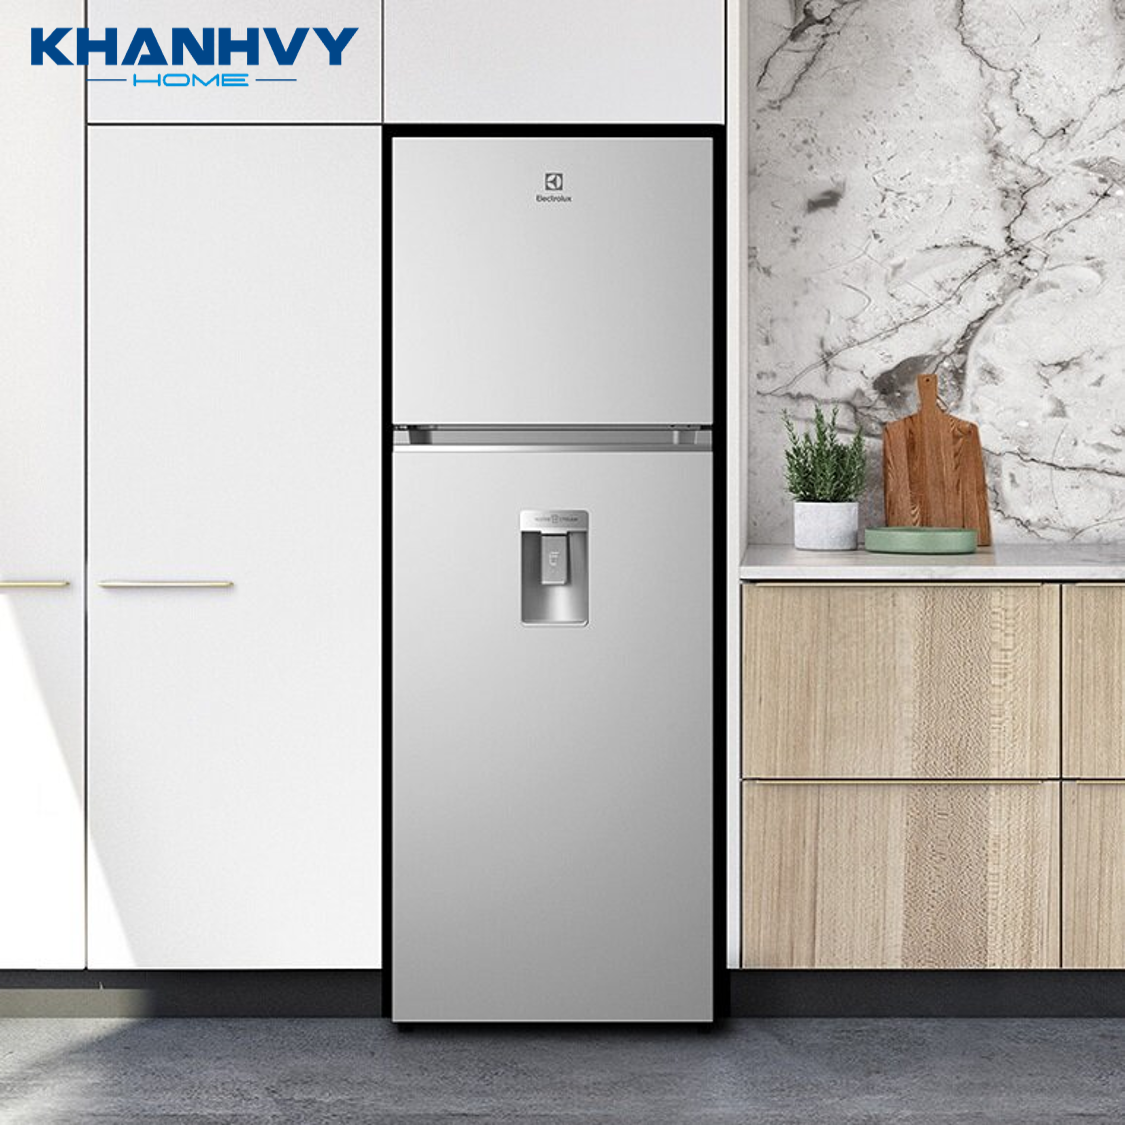 Tủ lạnh Electrolux ETB3440K-A được thiết kế hiện đại và sang trọng, thích hợp cho 3 – 5 người sử dụng